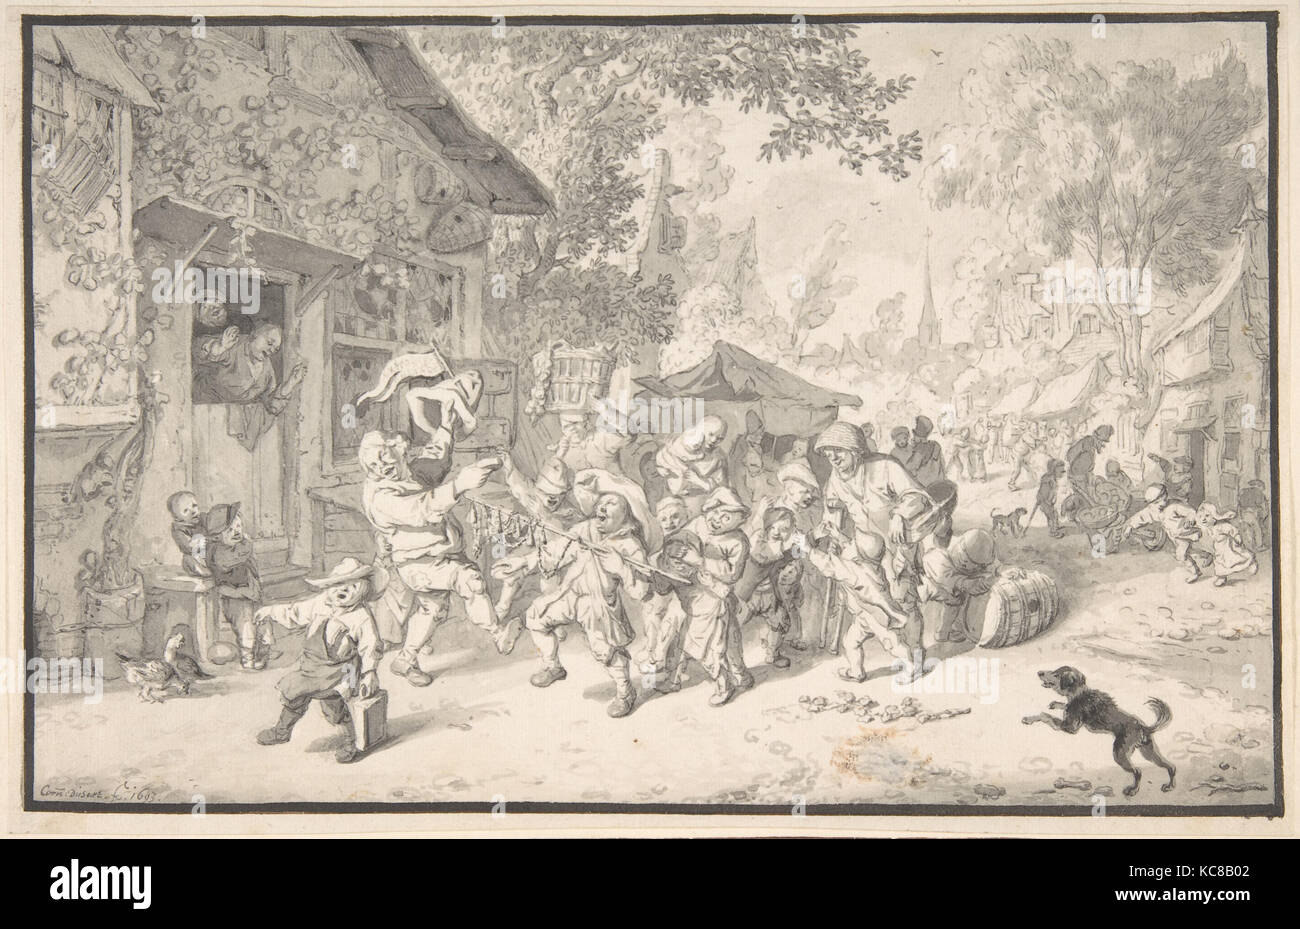 Un colporteur itinérant dans un village, Cornelis Dusart, 1693 Banque D'Images